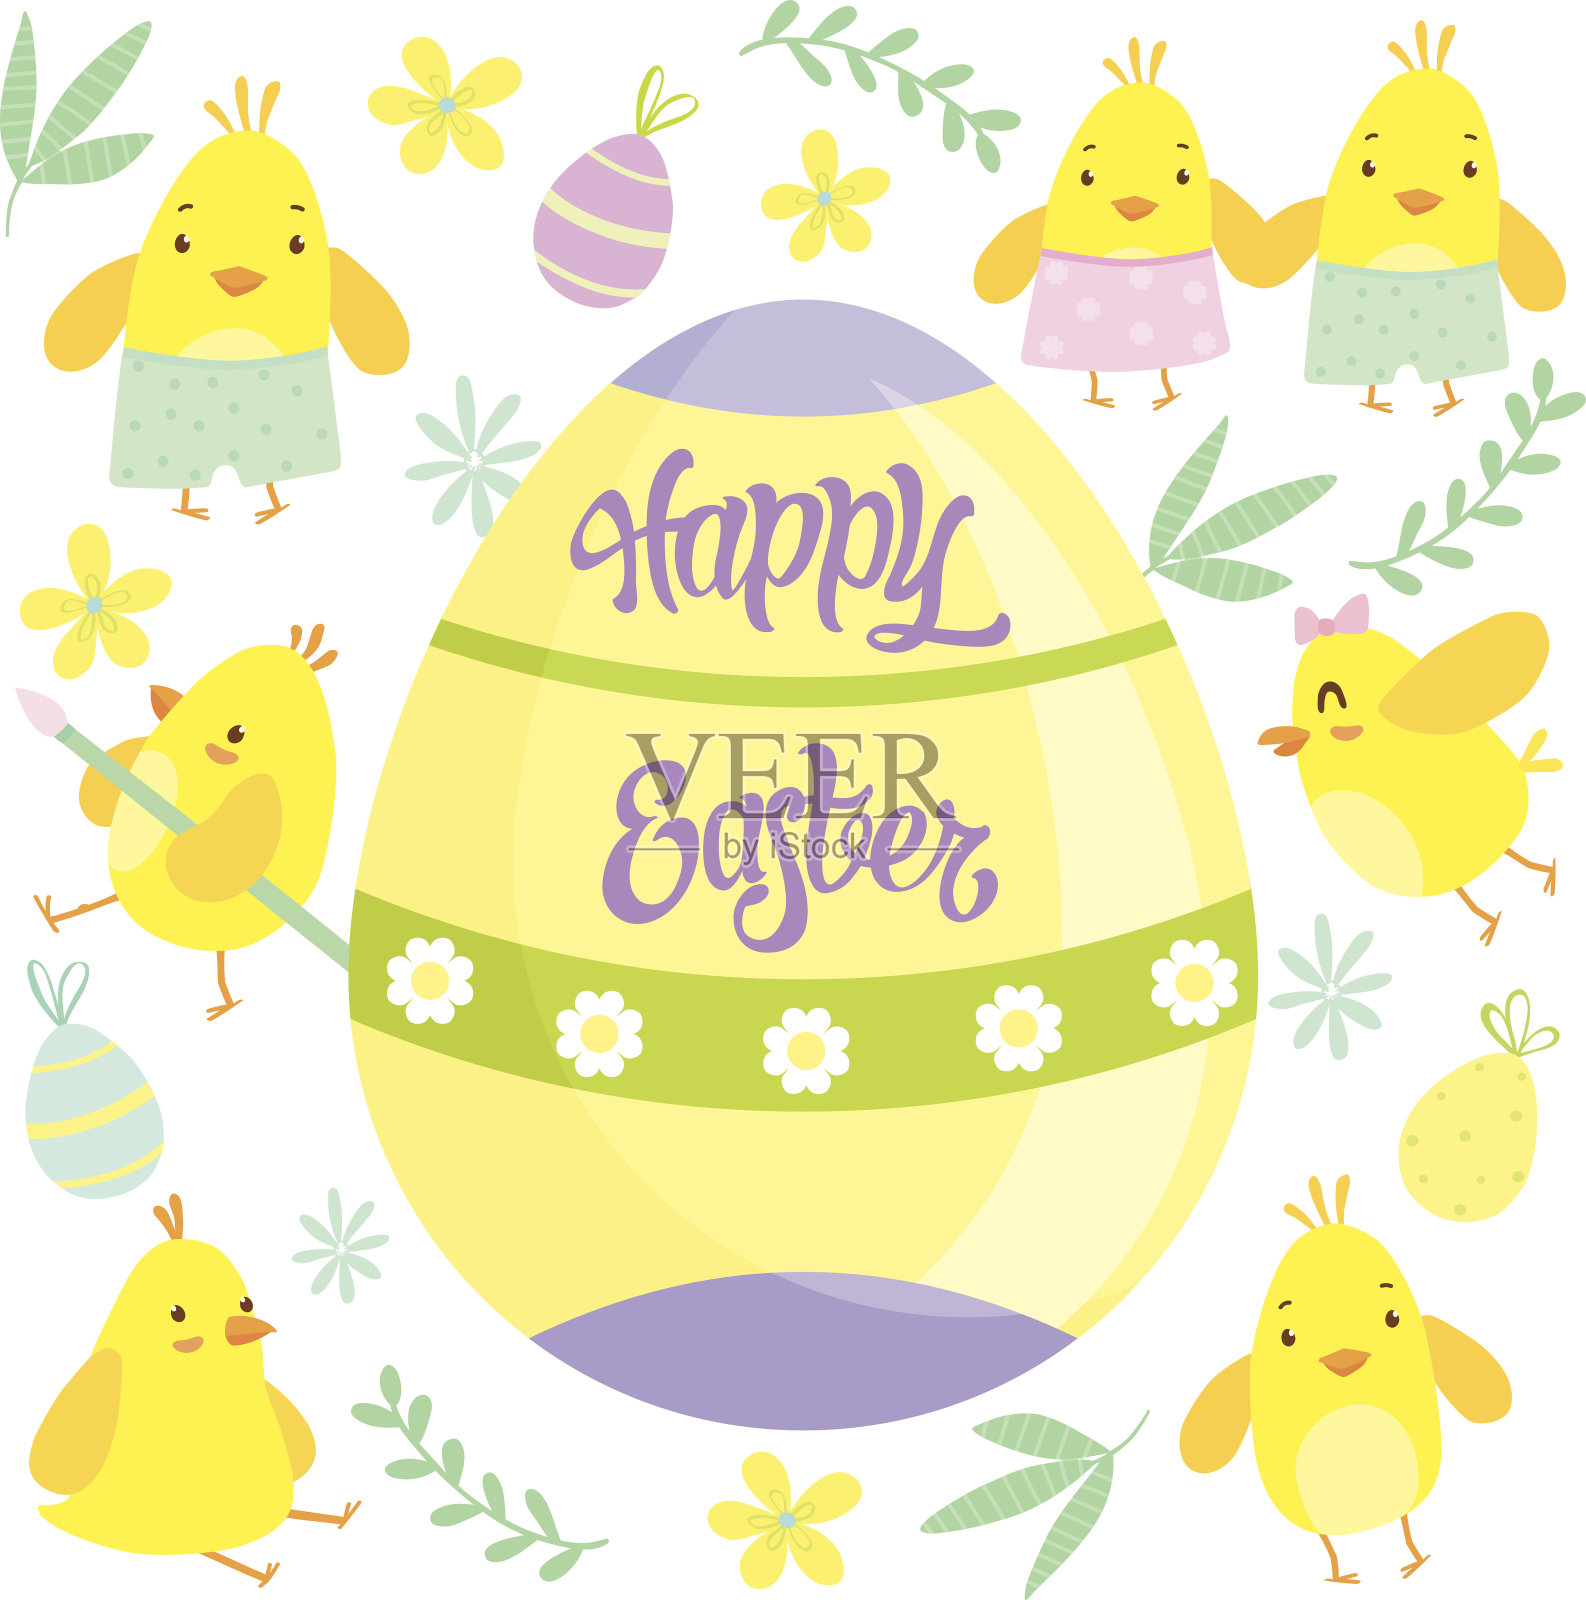 复活节的背景有小鸡和大鸡蛋。插画图片素材